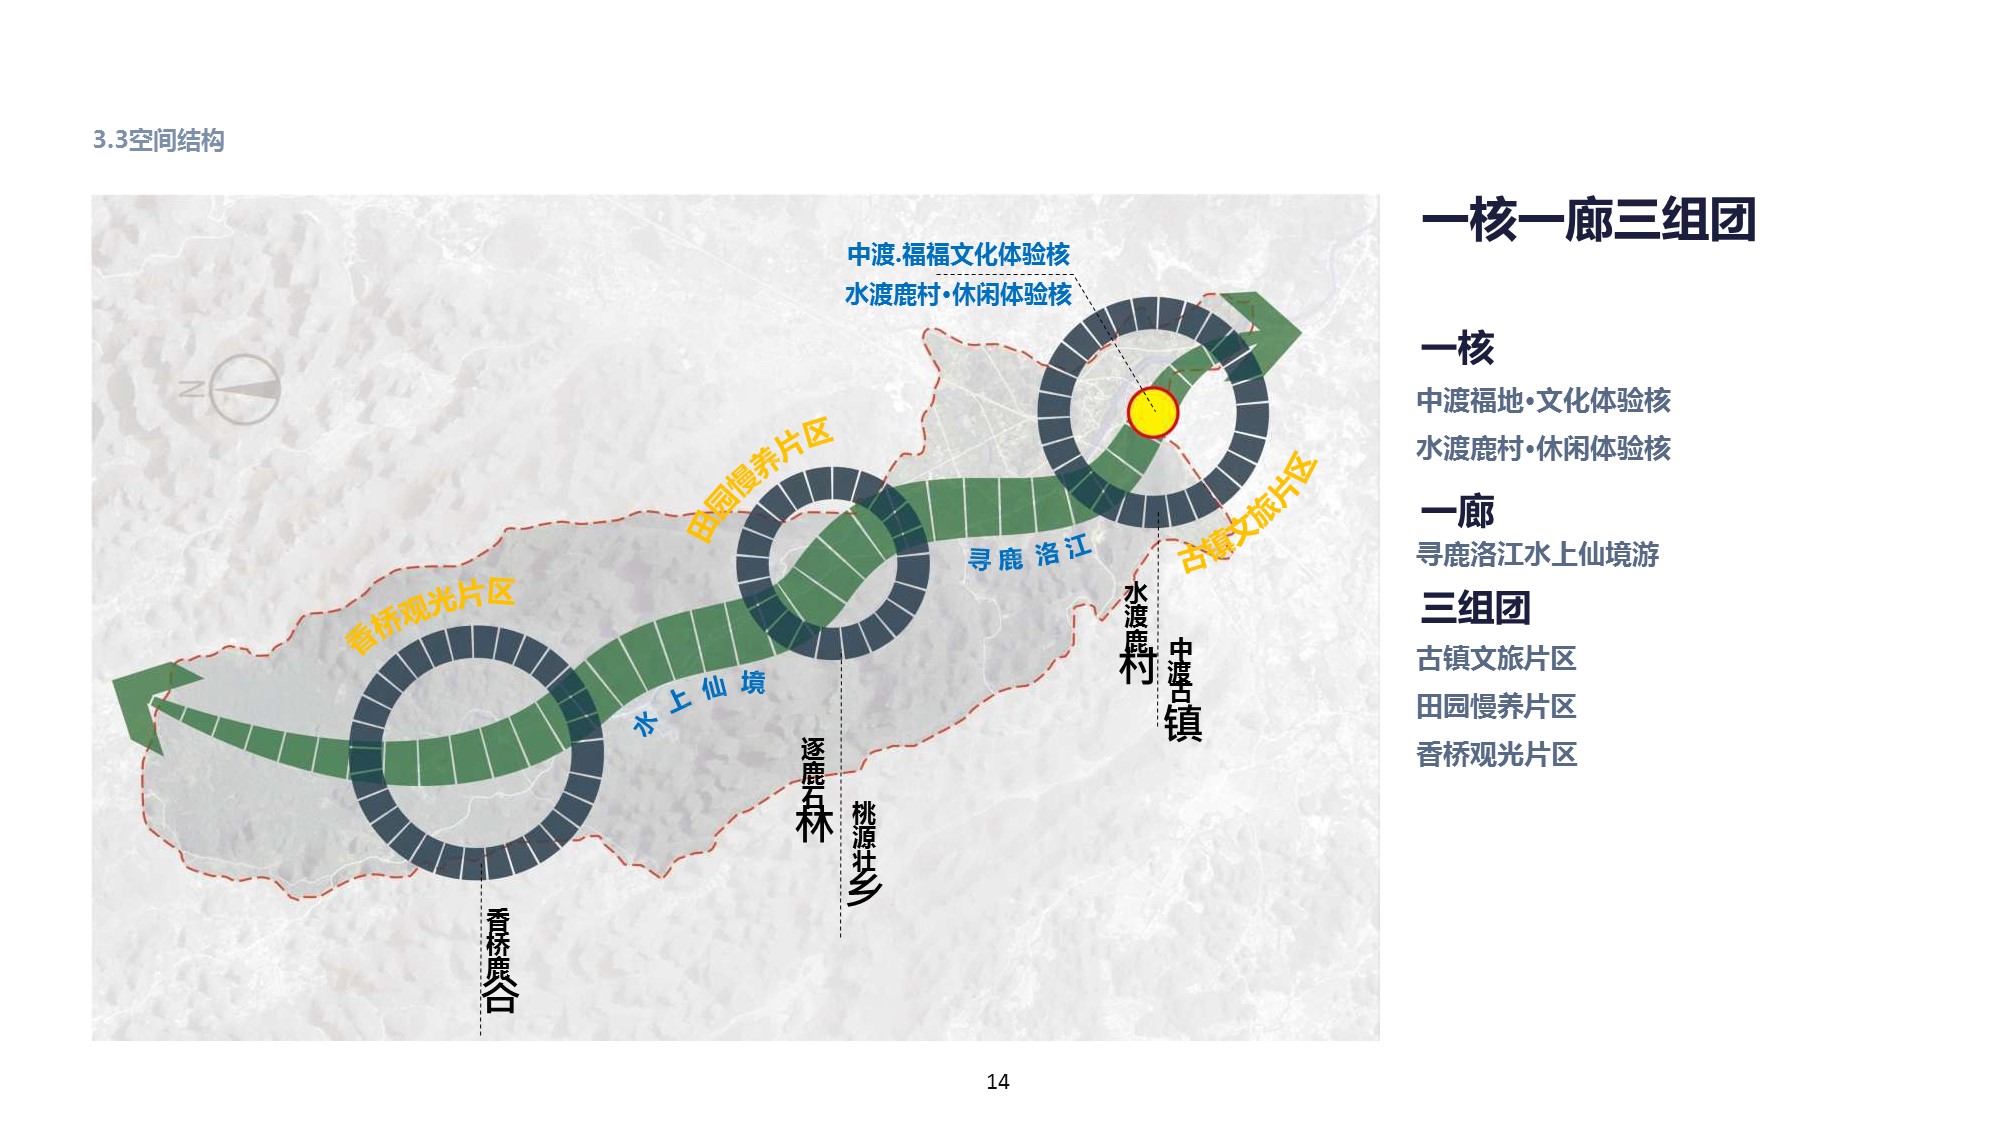 广西柳州市鹿寨县旅游资源梳理及重点产品策划咨询服务